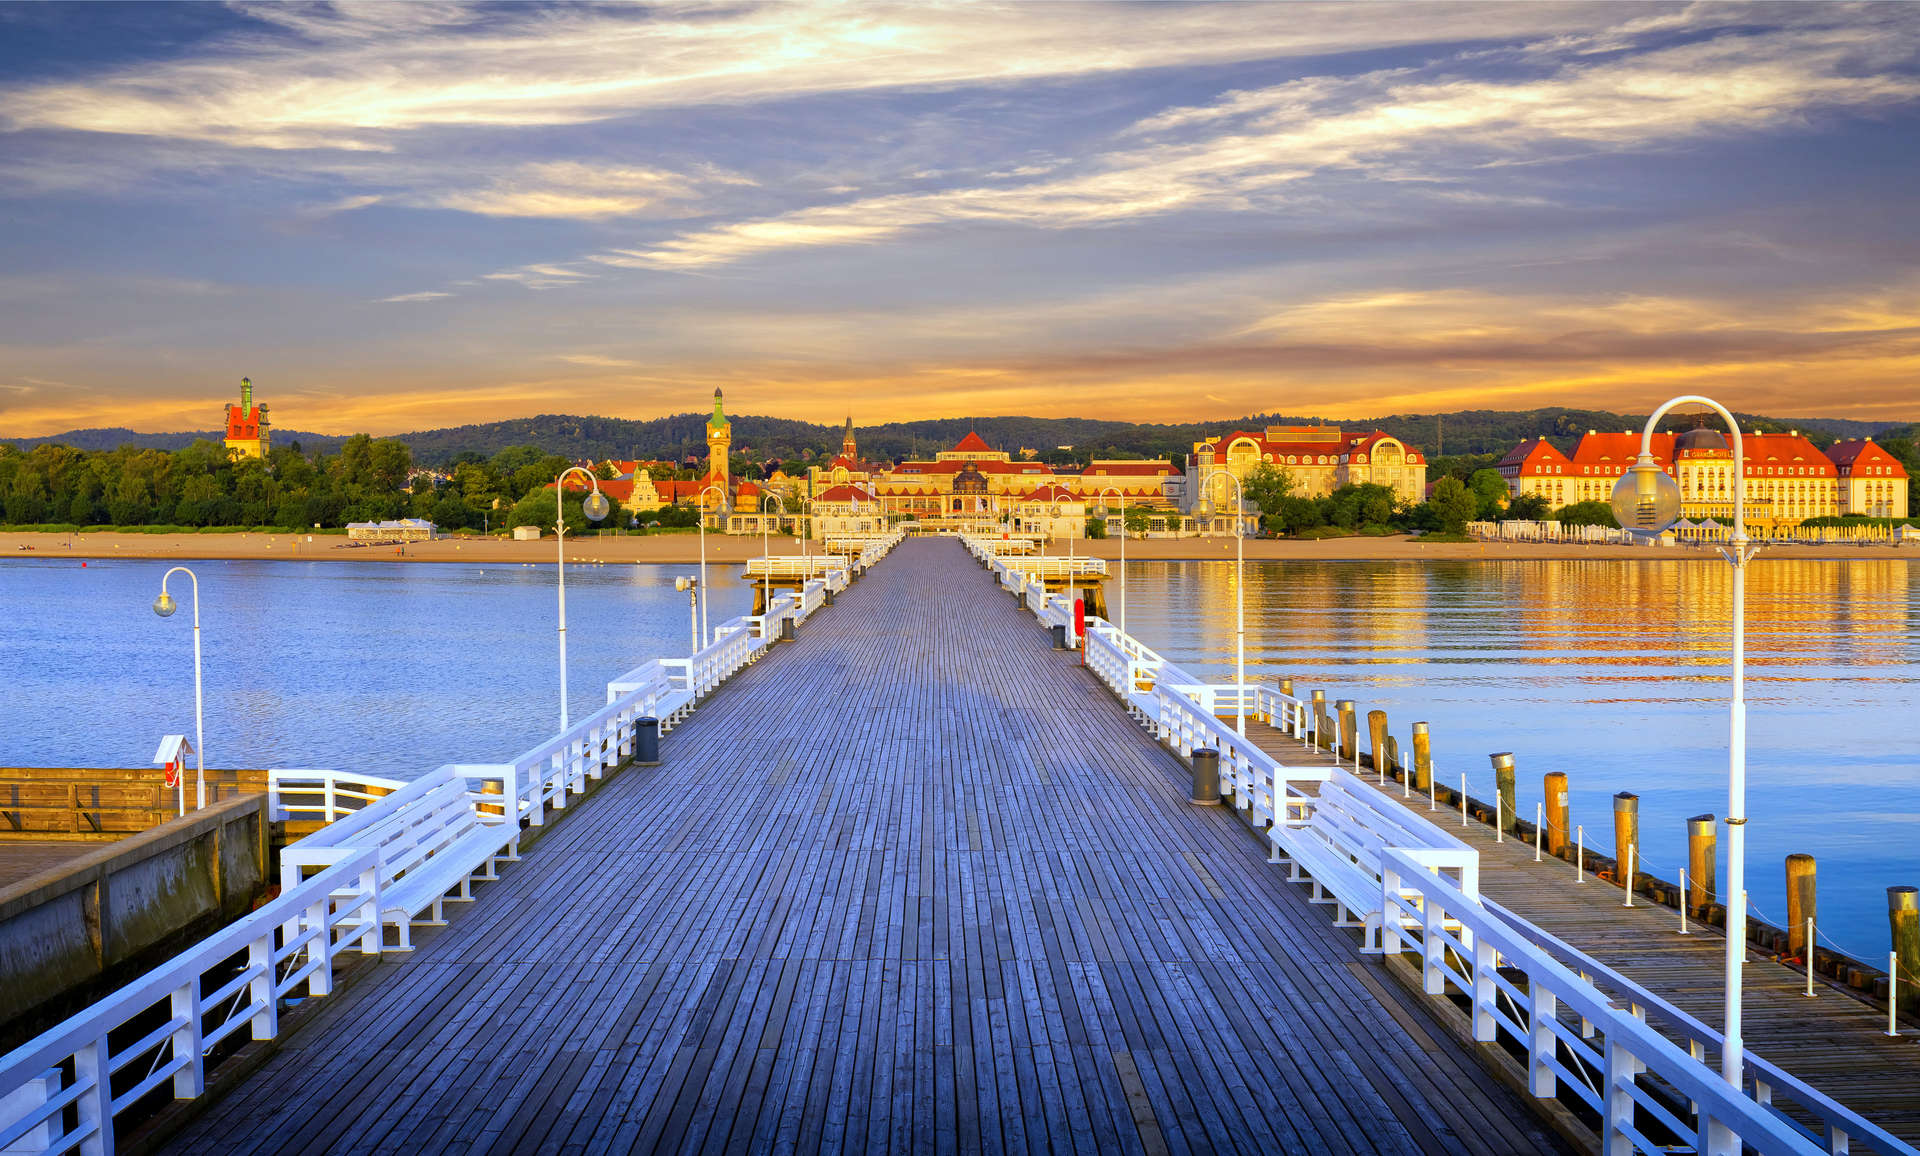 The pier in Sopot